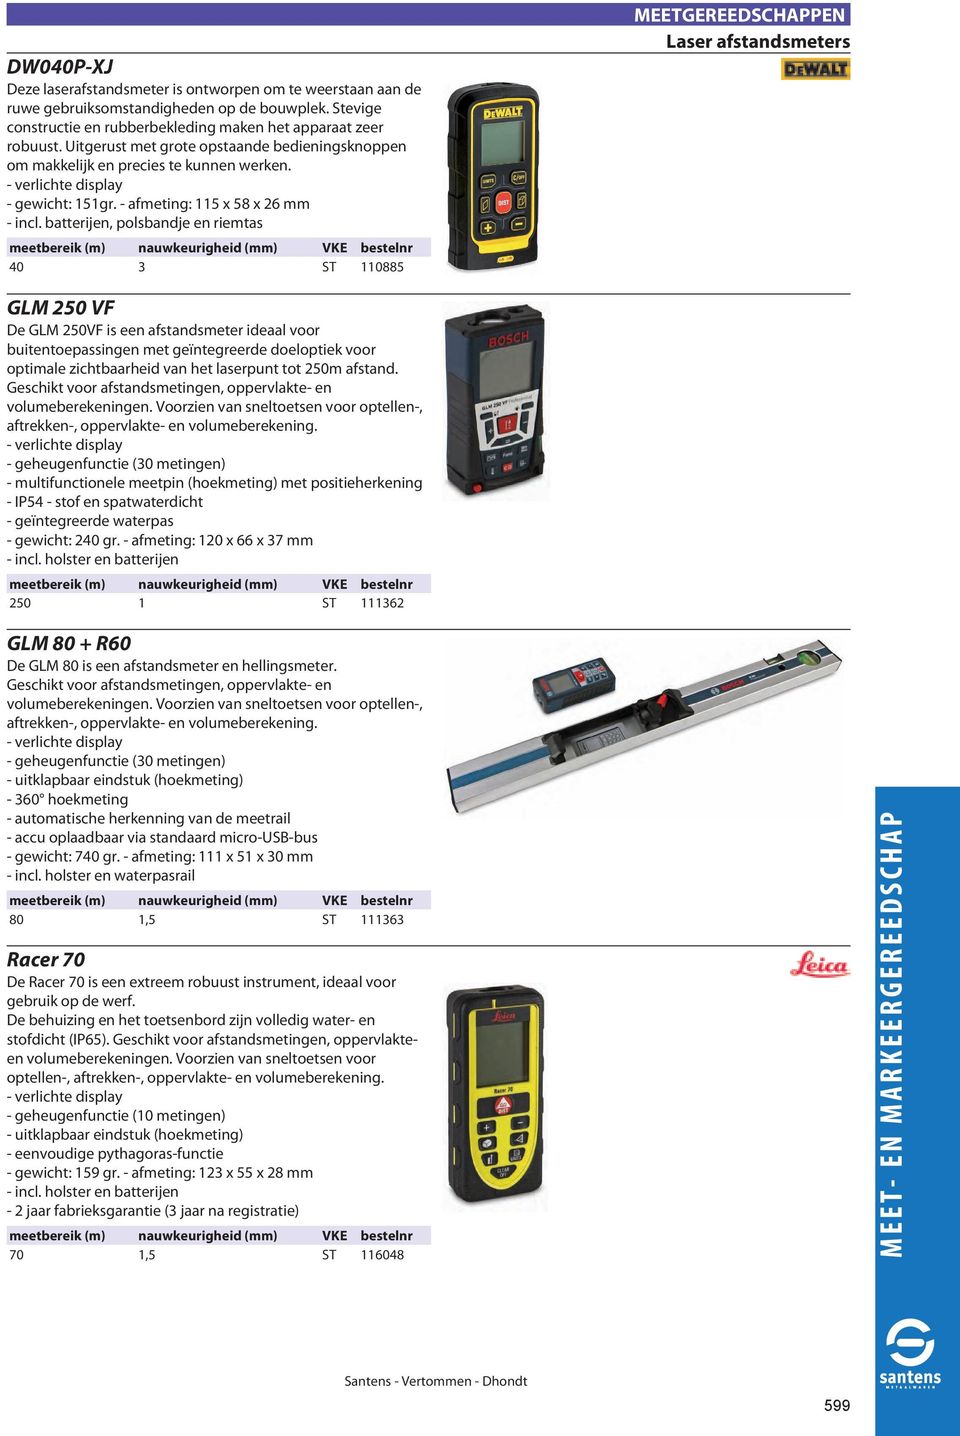 batterijen, polsbandje en riemtas meetbereik (m) nauwkeurigheid (mm) 40 3 ST 110885 Laser afstandsmeters GLM 250 VF De GLM 250VF is een afstandsmeter ideaal voor buitentoepassingen met ge ntegreerde